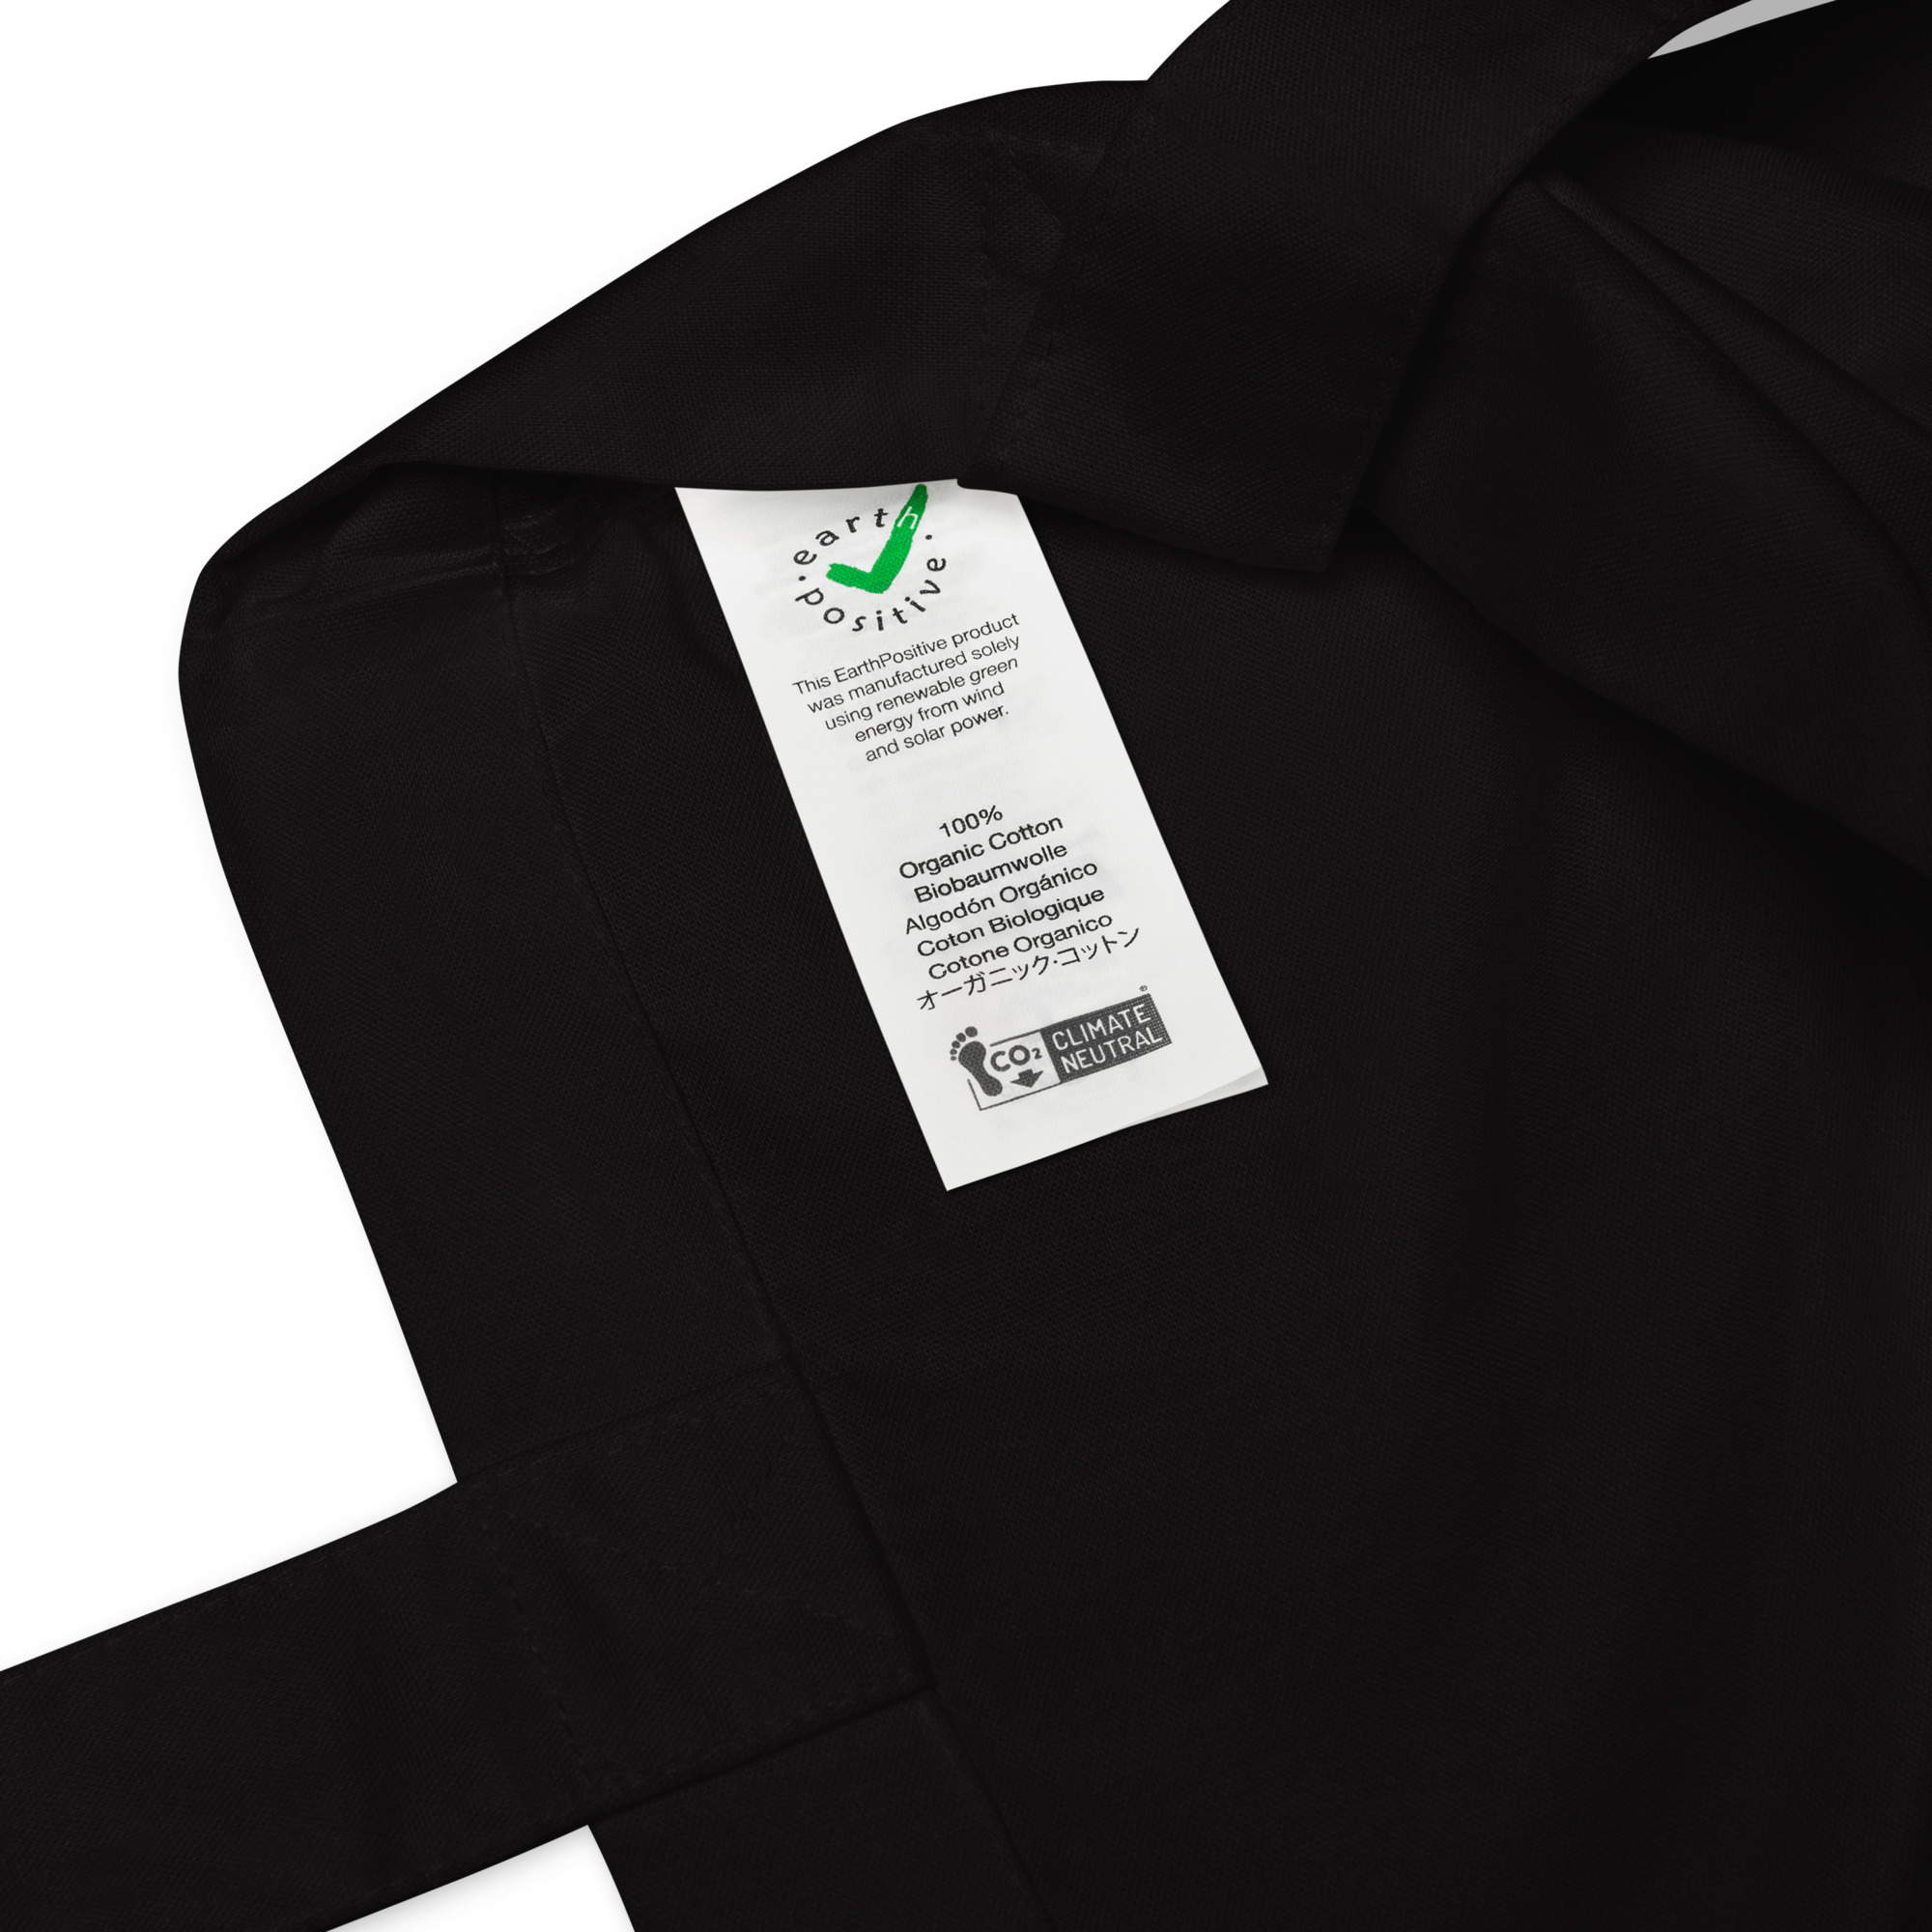 organic-fashion-tote-bag-black-product-details-641db3b8e8fc0.jpg